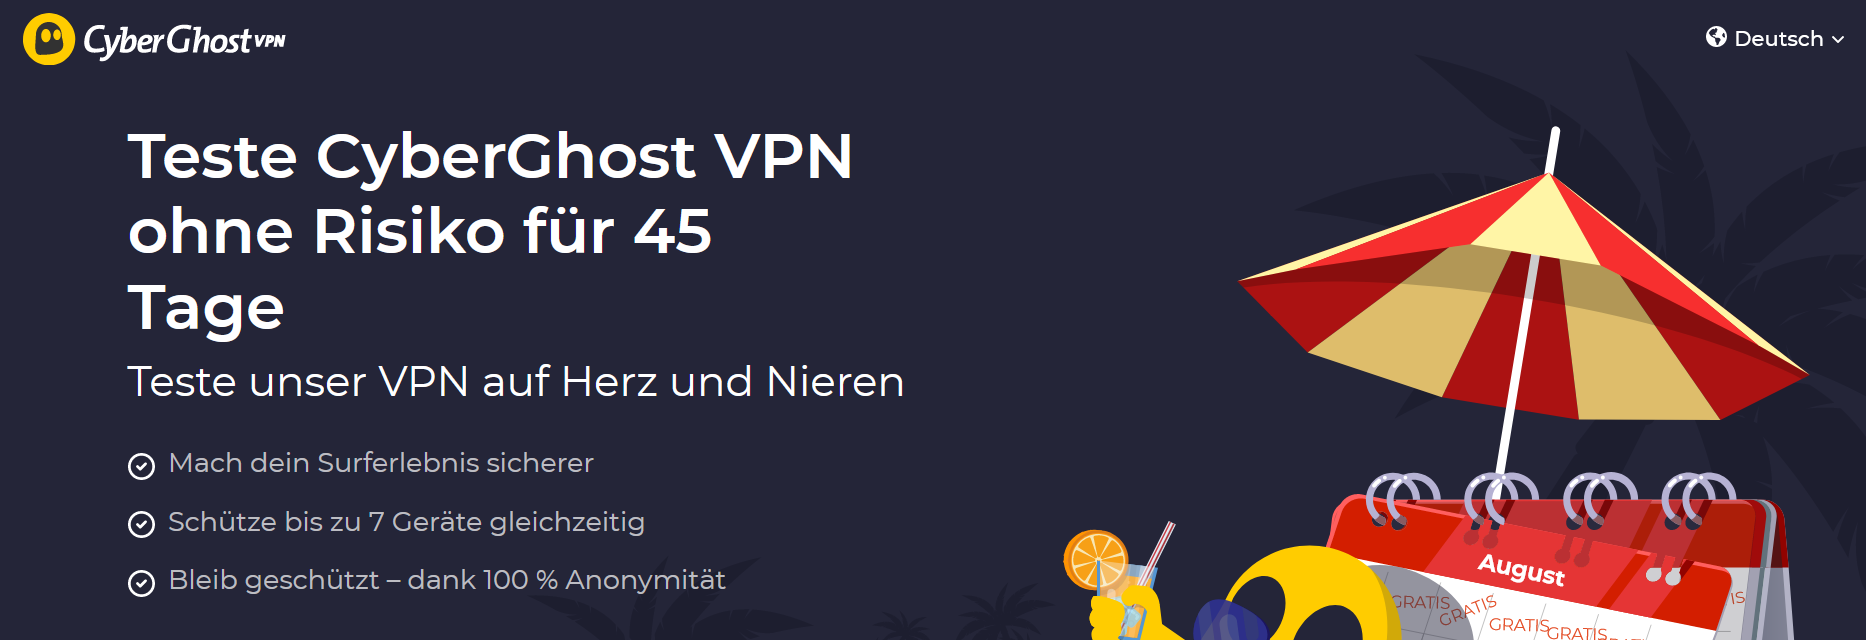 CyberGhost VPN Kostenloser Test